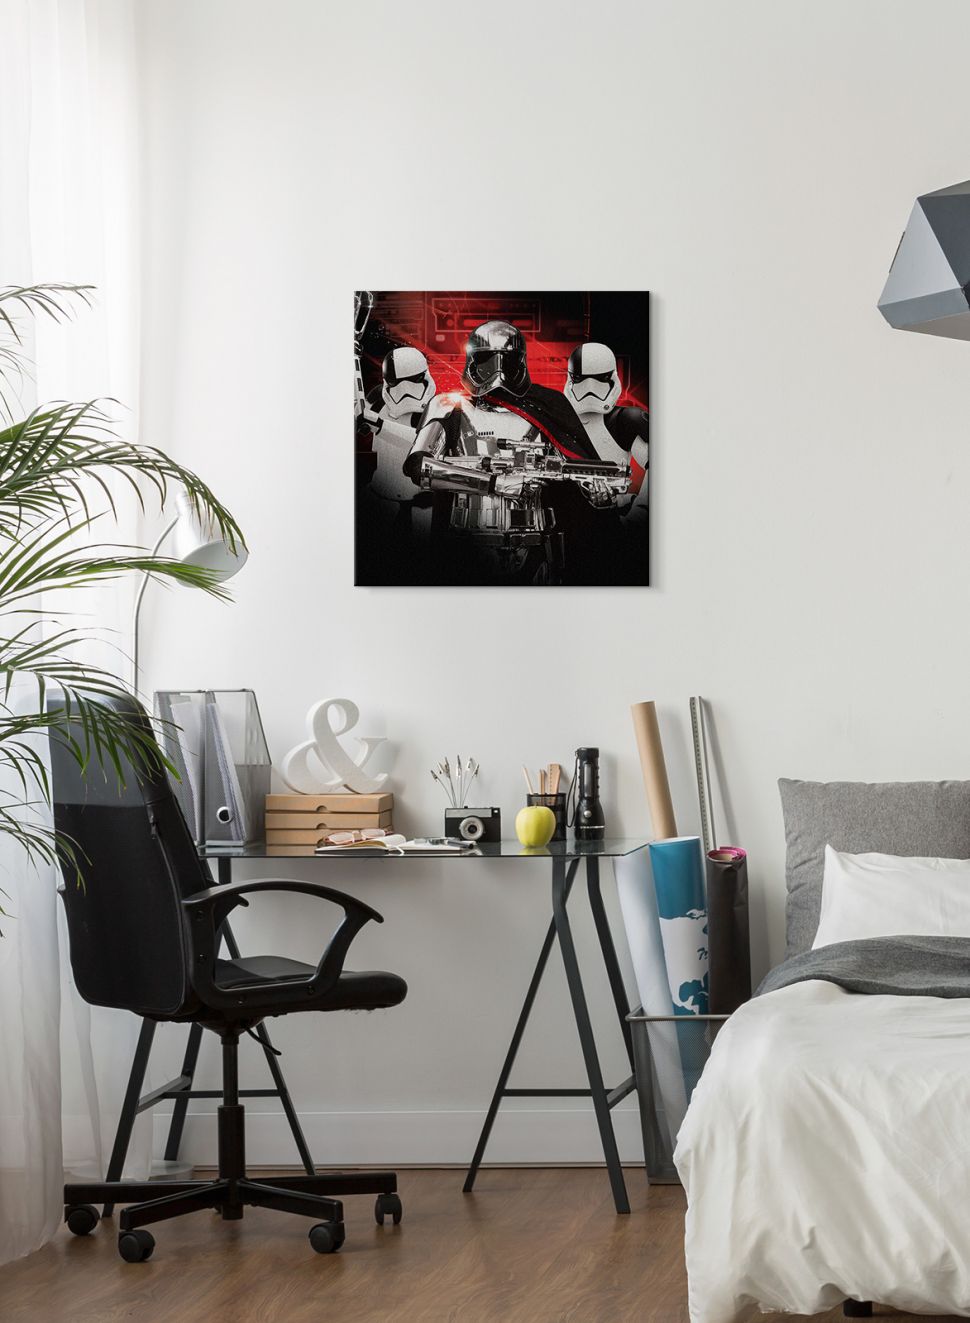 Obraz na płótnie Star Wars: The Last Jedi (Trooper Team) wiszący na białej ścianie nad biurkiem